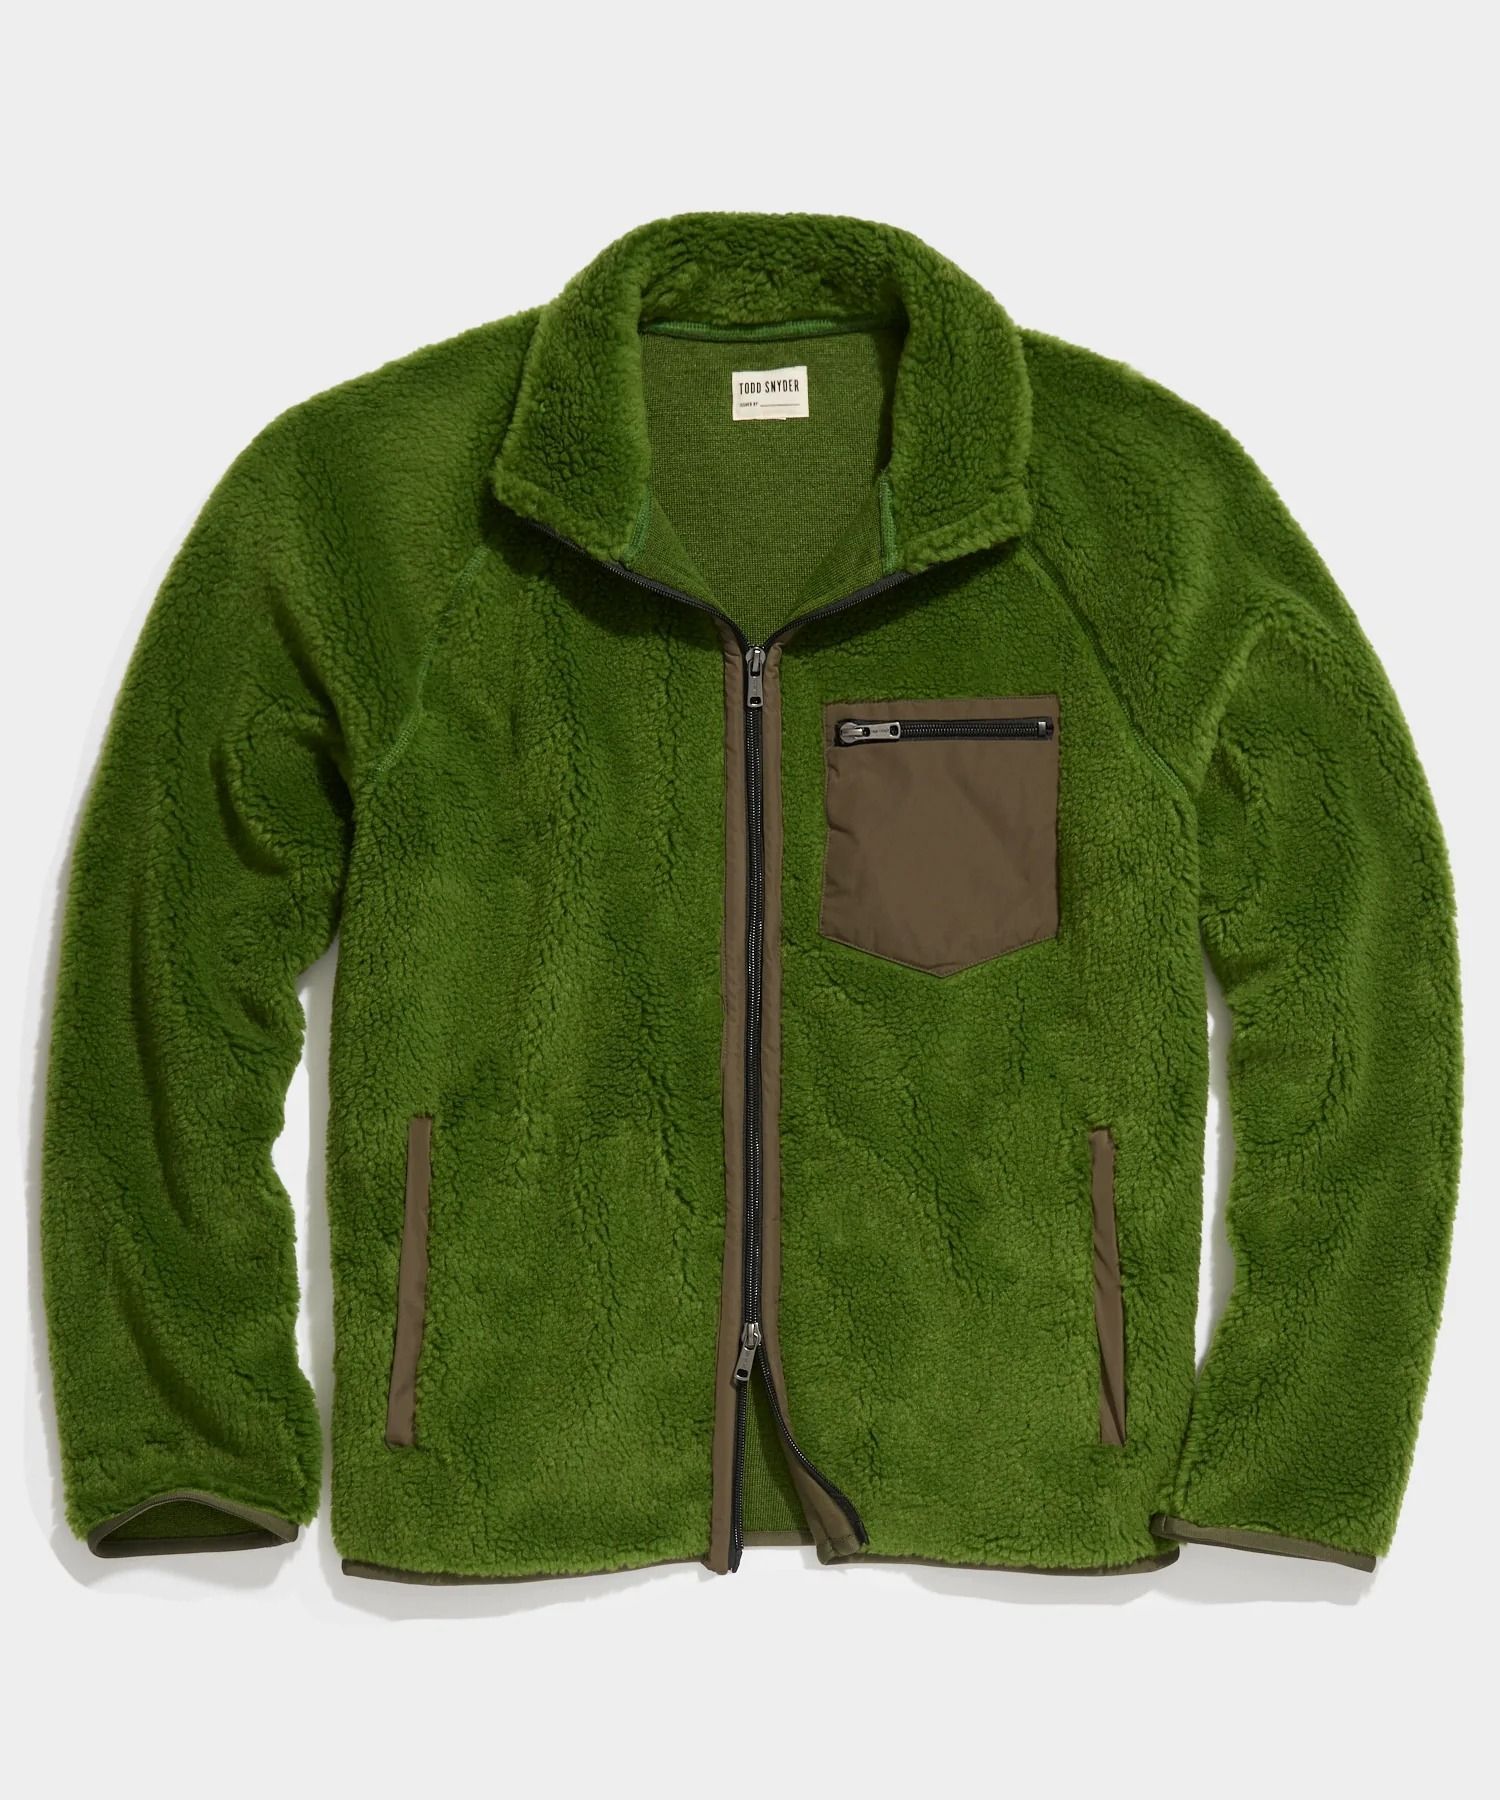 Adirondack Fleece Full-Zip Jacket